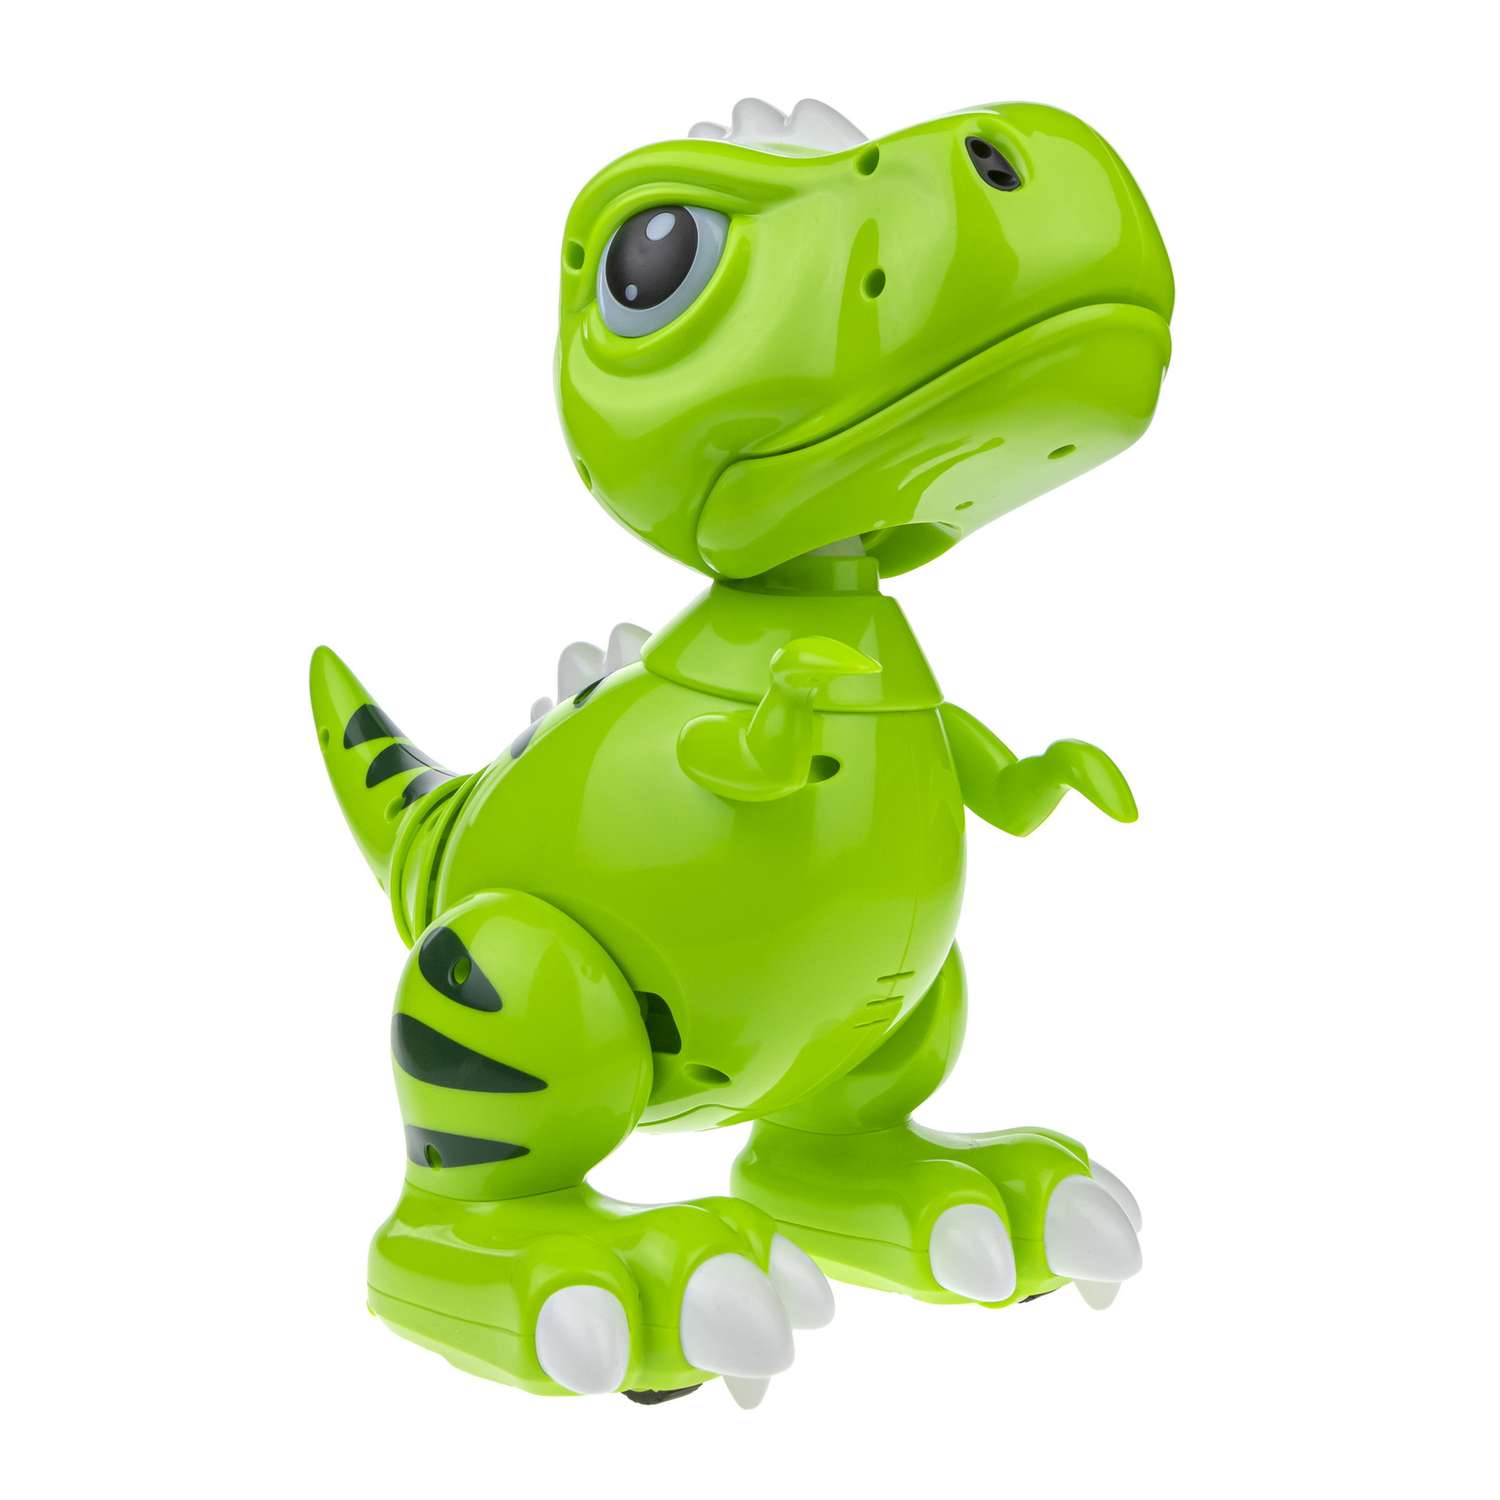 Интерактивная игрушка Robo Pets Динозавр Т-РЕКС зеленый на РУ со световыми звуковыми и эффектами движения - фото 8